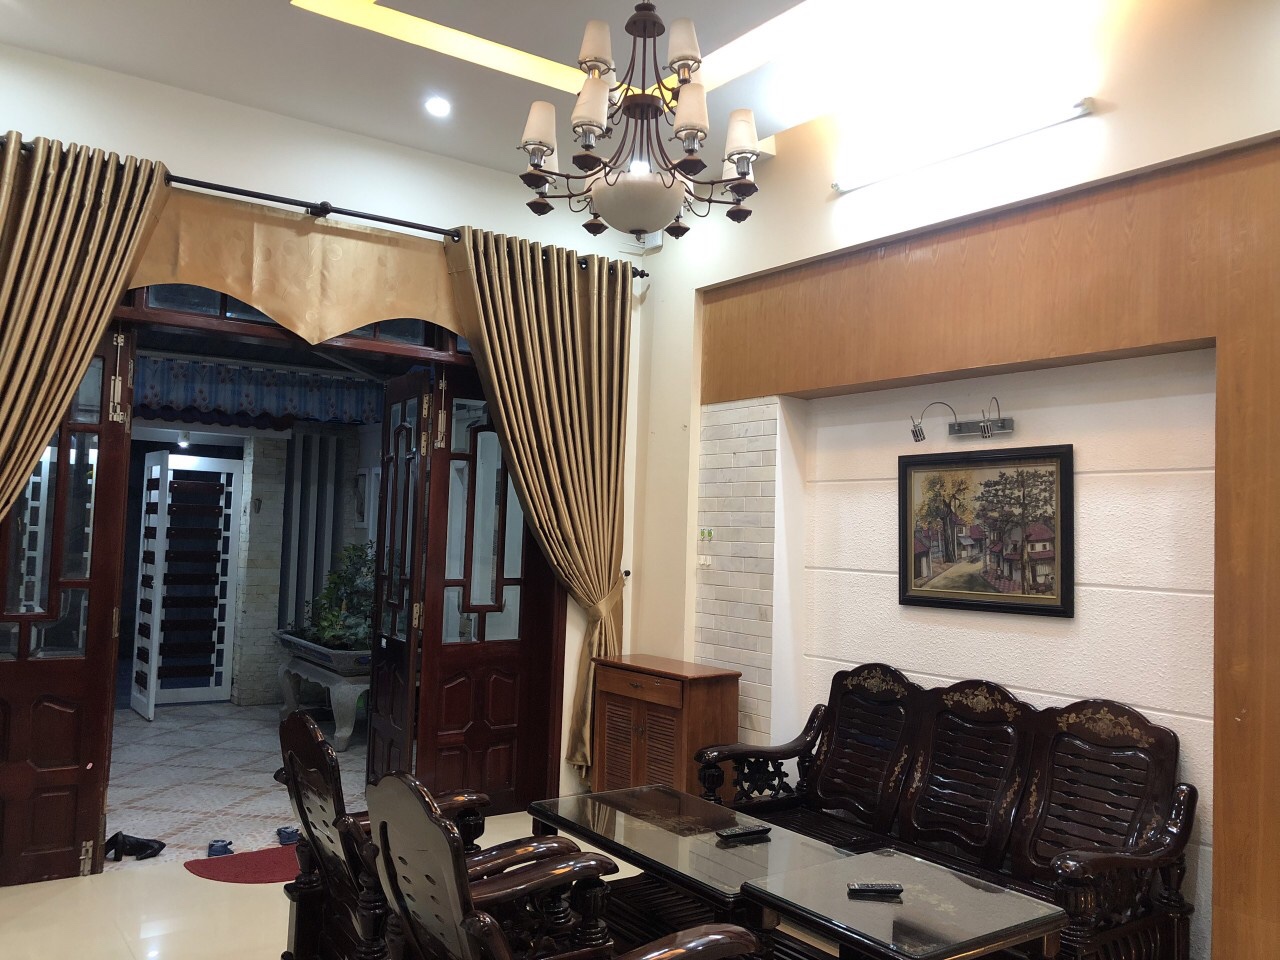 Cho thuê nhiều nhà đẹp tại Đà Nẵng đáp ứng nhiều nhu cầu khác nhau của KH.LH:0983.750.220

 10355468